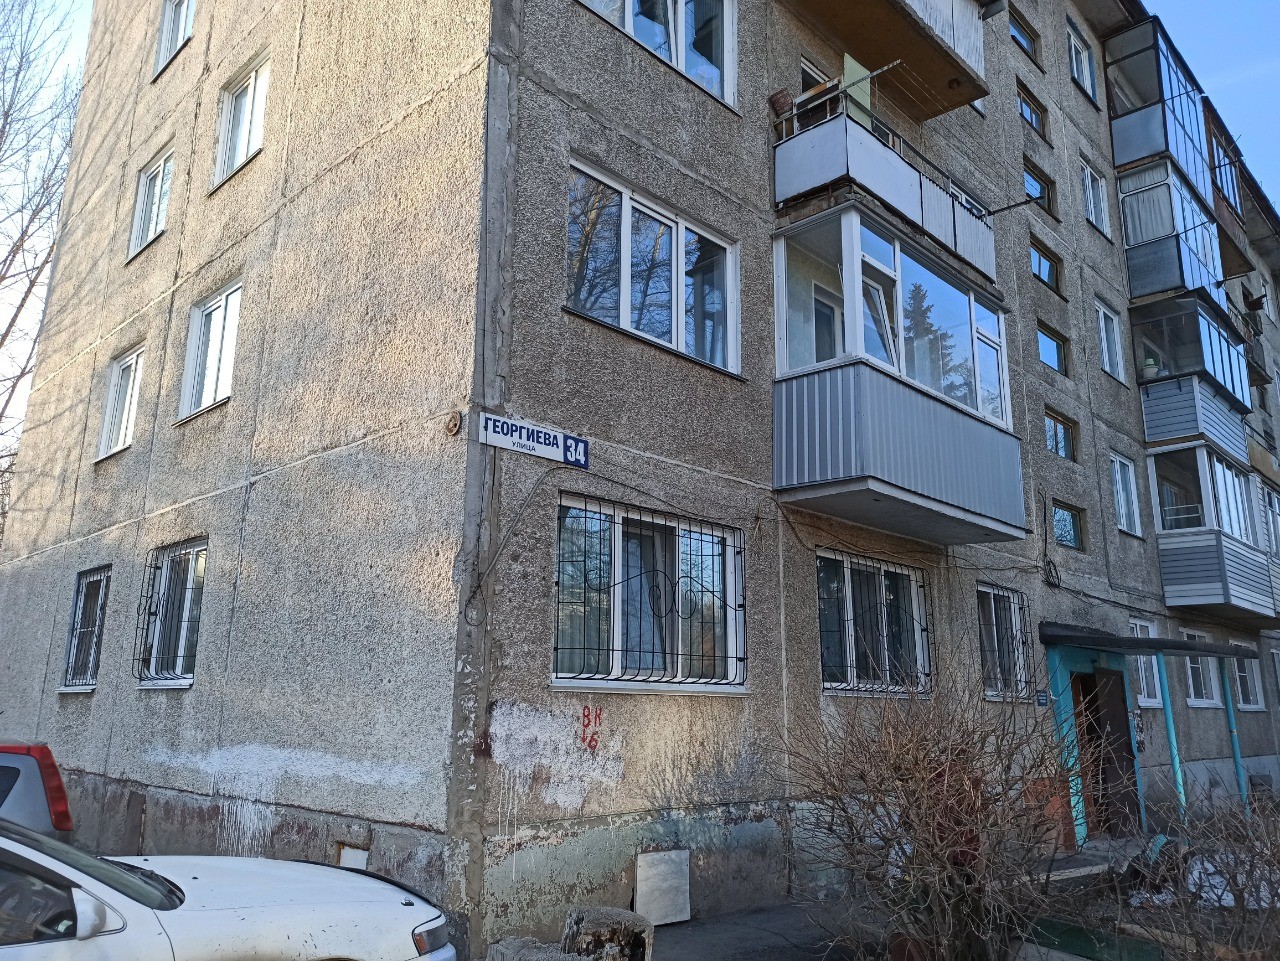 край. Алтайский, г. Барнаул, ул. Георгиева, д. 34-фасад здания